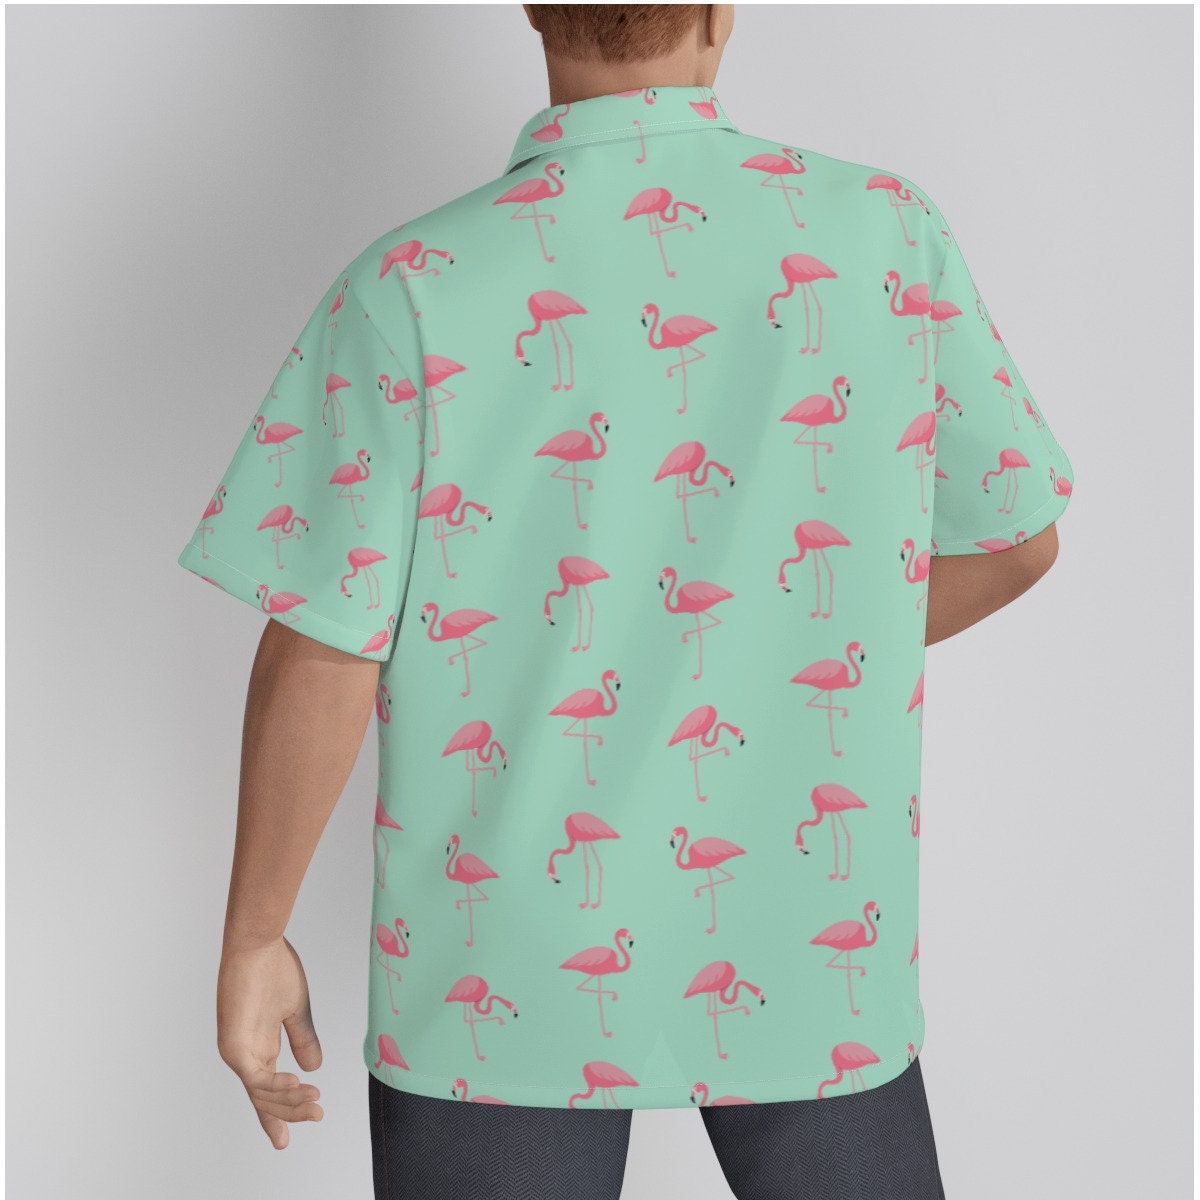 Pretty in Pink Flamingo Men's Tropical Hawaiian Shirt